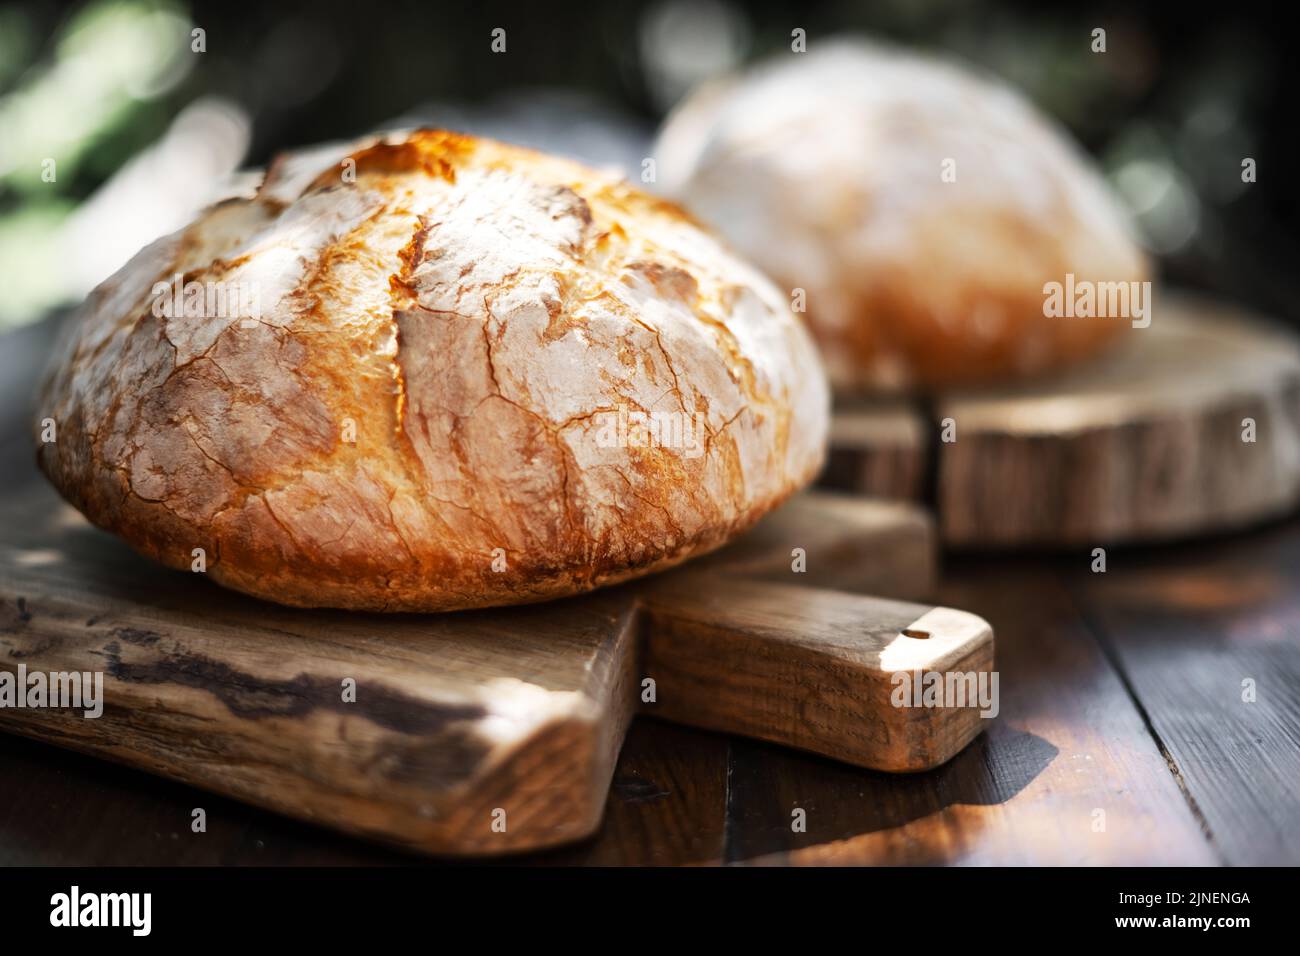 Pane tradizionale lievitato con buccia di rosa su un rustico tavolo di legno. Fotografia alimentare sana Foto Stock